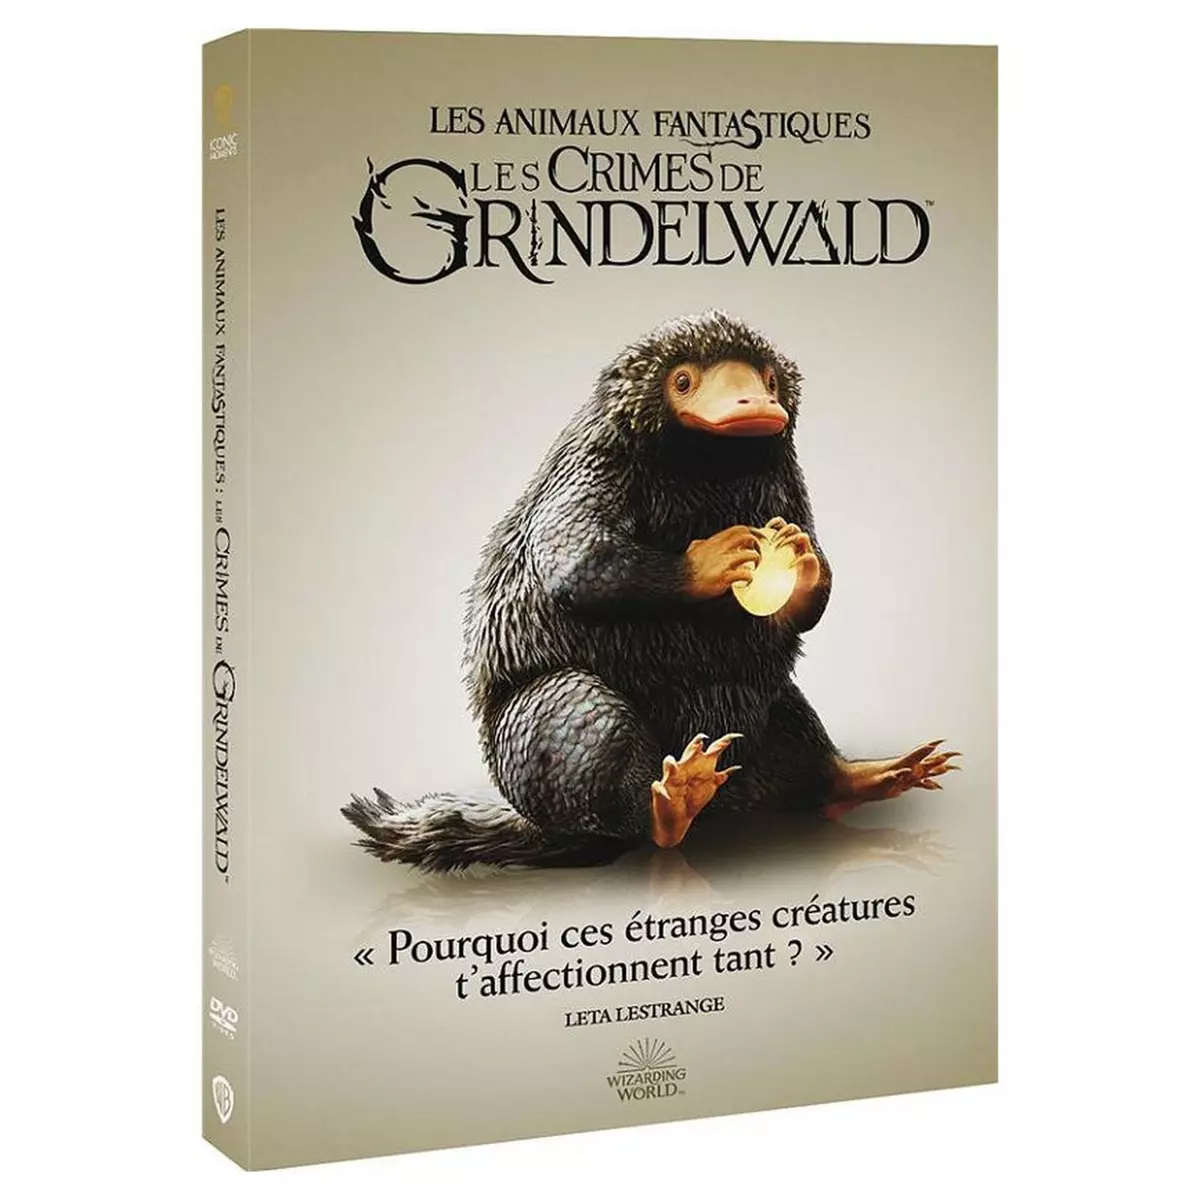 Les Animaux fantastiques : Les Crimes de Grindelwald DVD